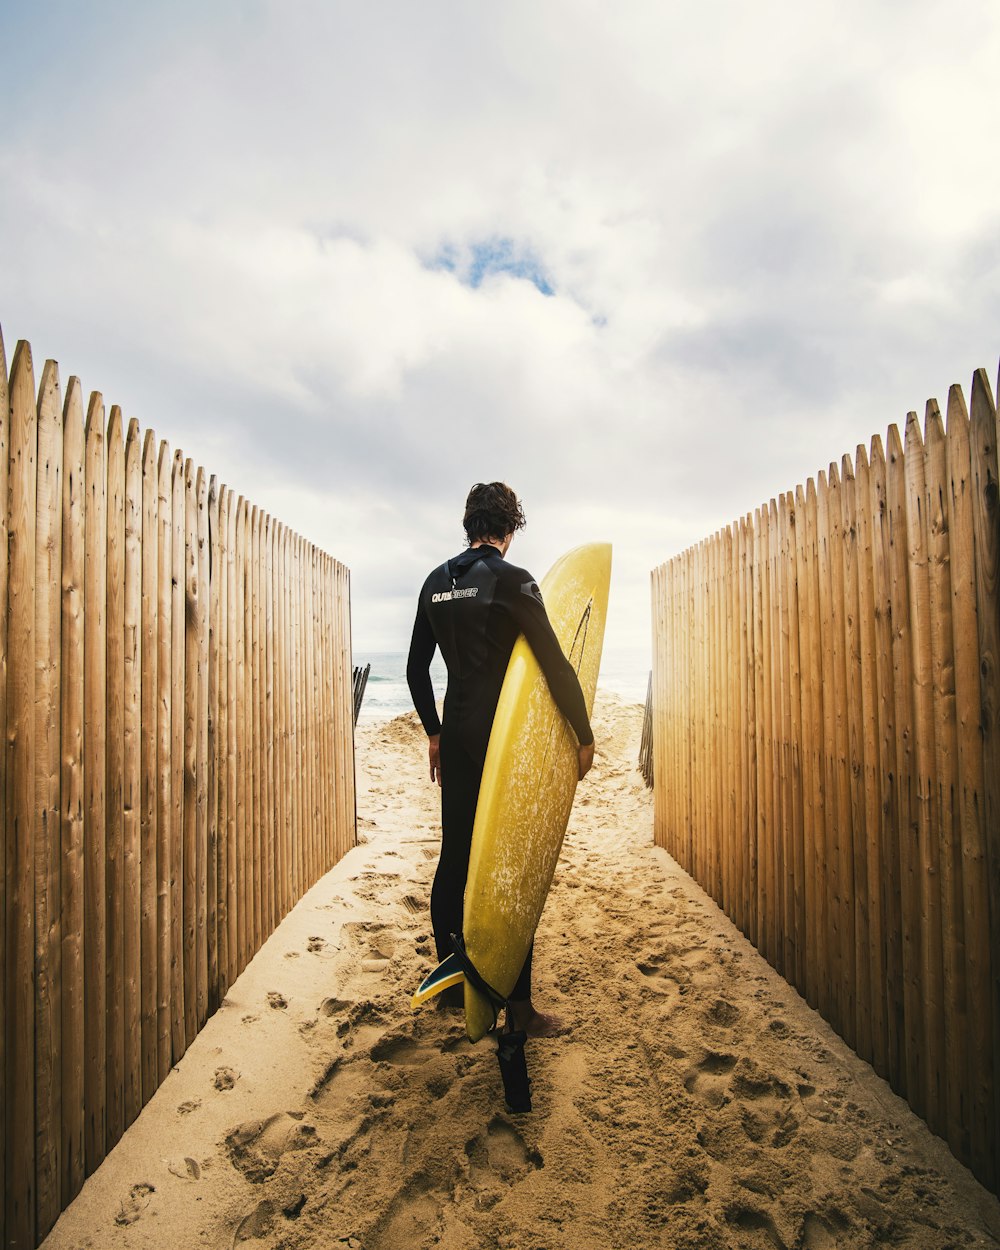 Persona in piedi tra le recinzioni per la privacy mentre tiene la tavola da surf gialla durante il giorno